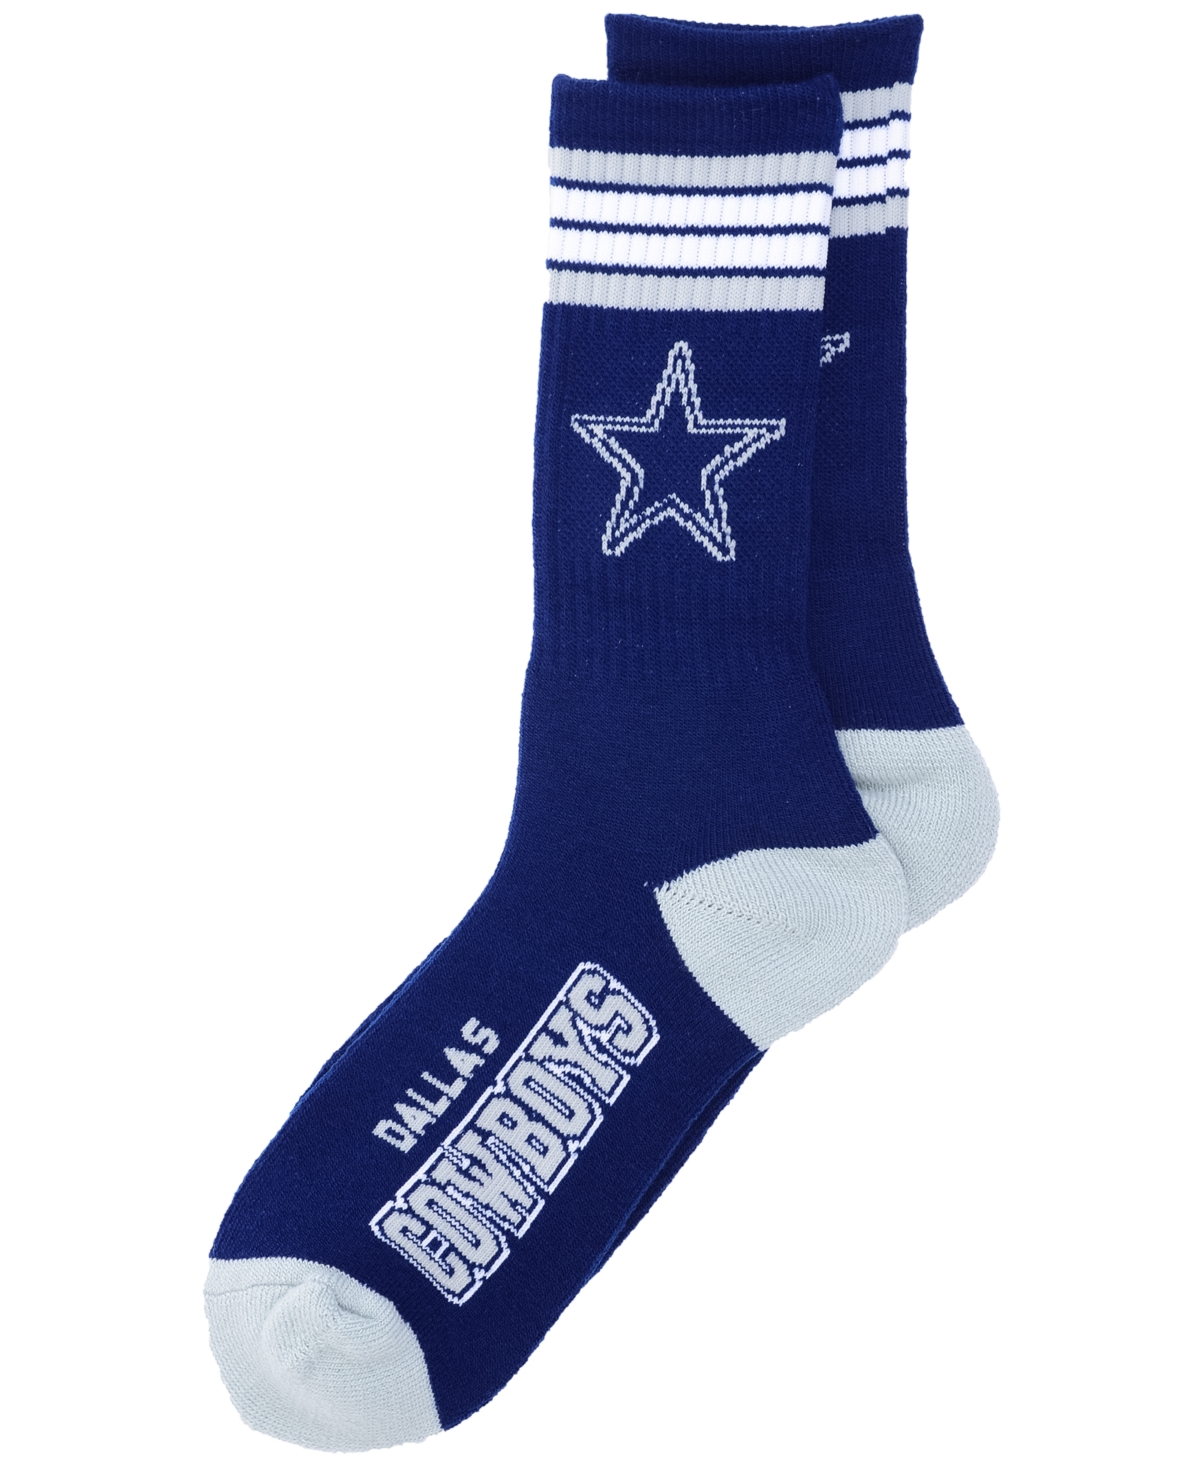 Dallas Cowboys 4 Stripe Deuce Crew 504 Sock - Navy/Gray